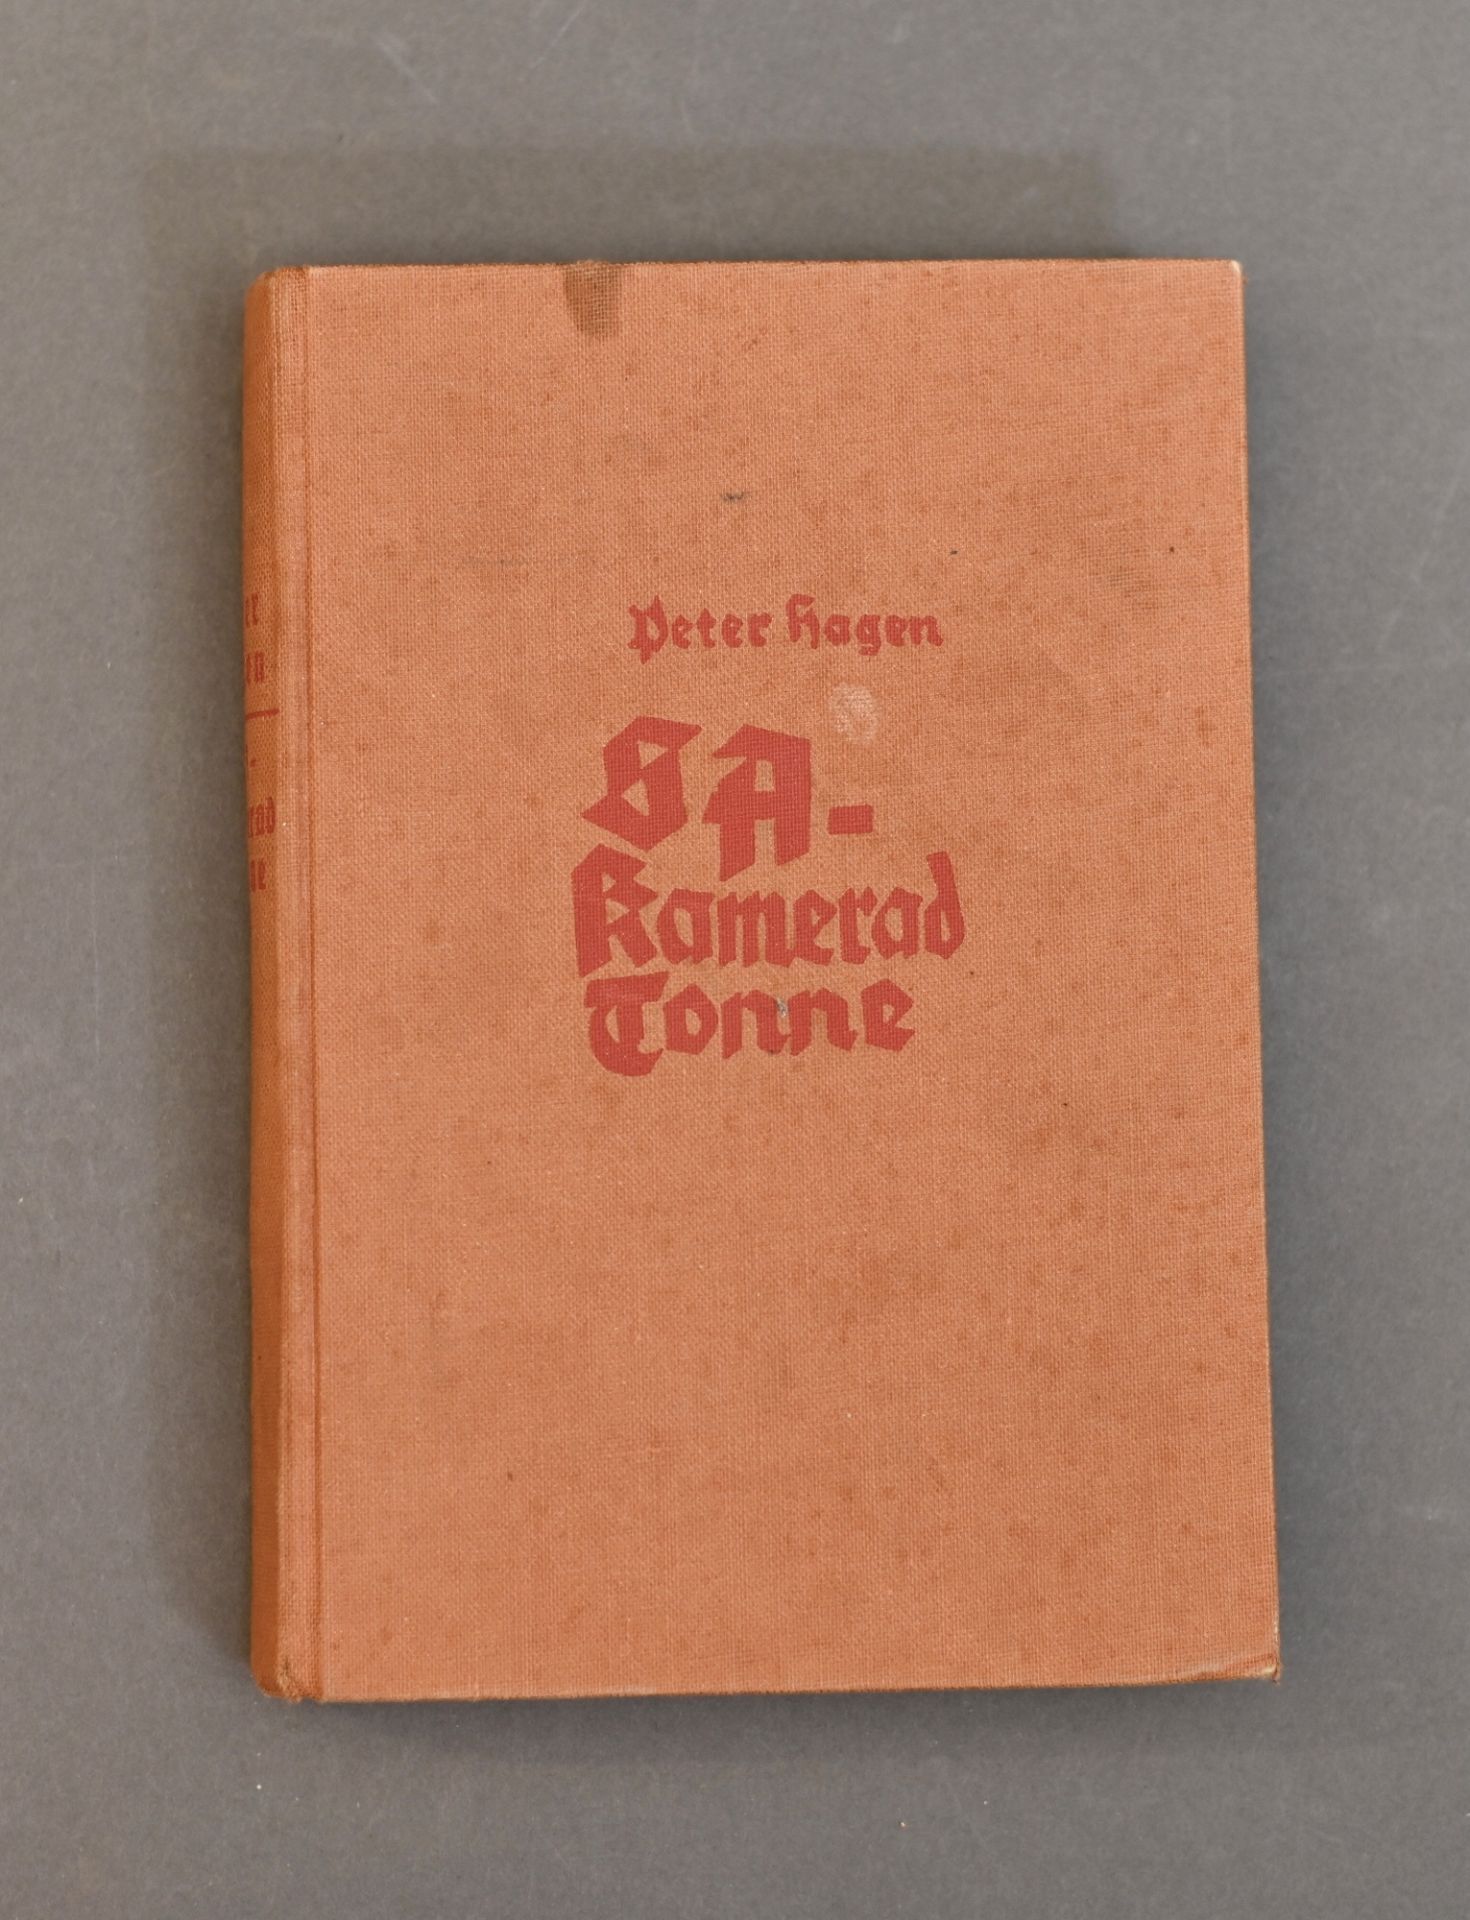 Buch von Peter Hagen, Nationaler Freiheitsverlag Berlin 1933, GW 1968 "Kamerad Tonne",